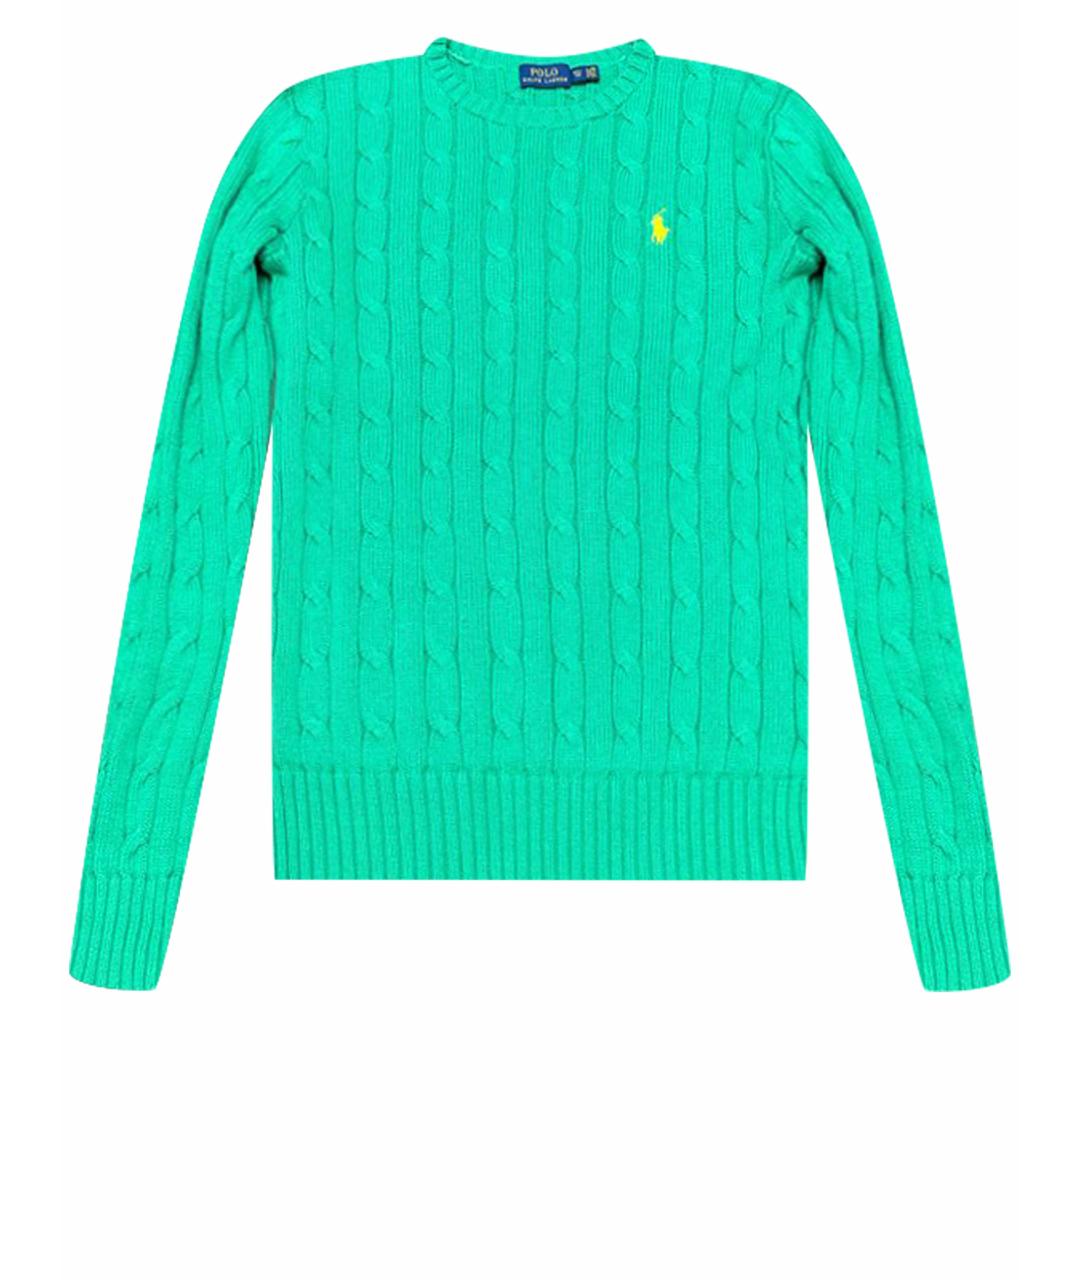 POLO RALPH LAUREN Зеленый хлопковый джемпер / свитер, фото 1